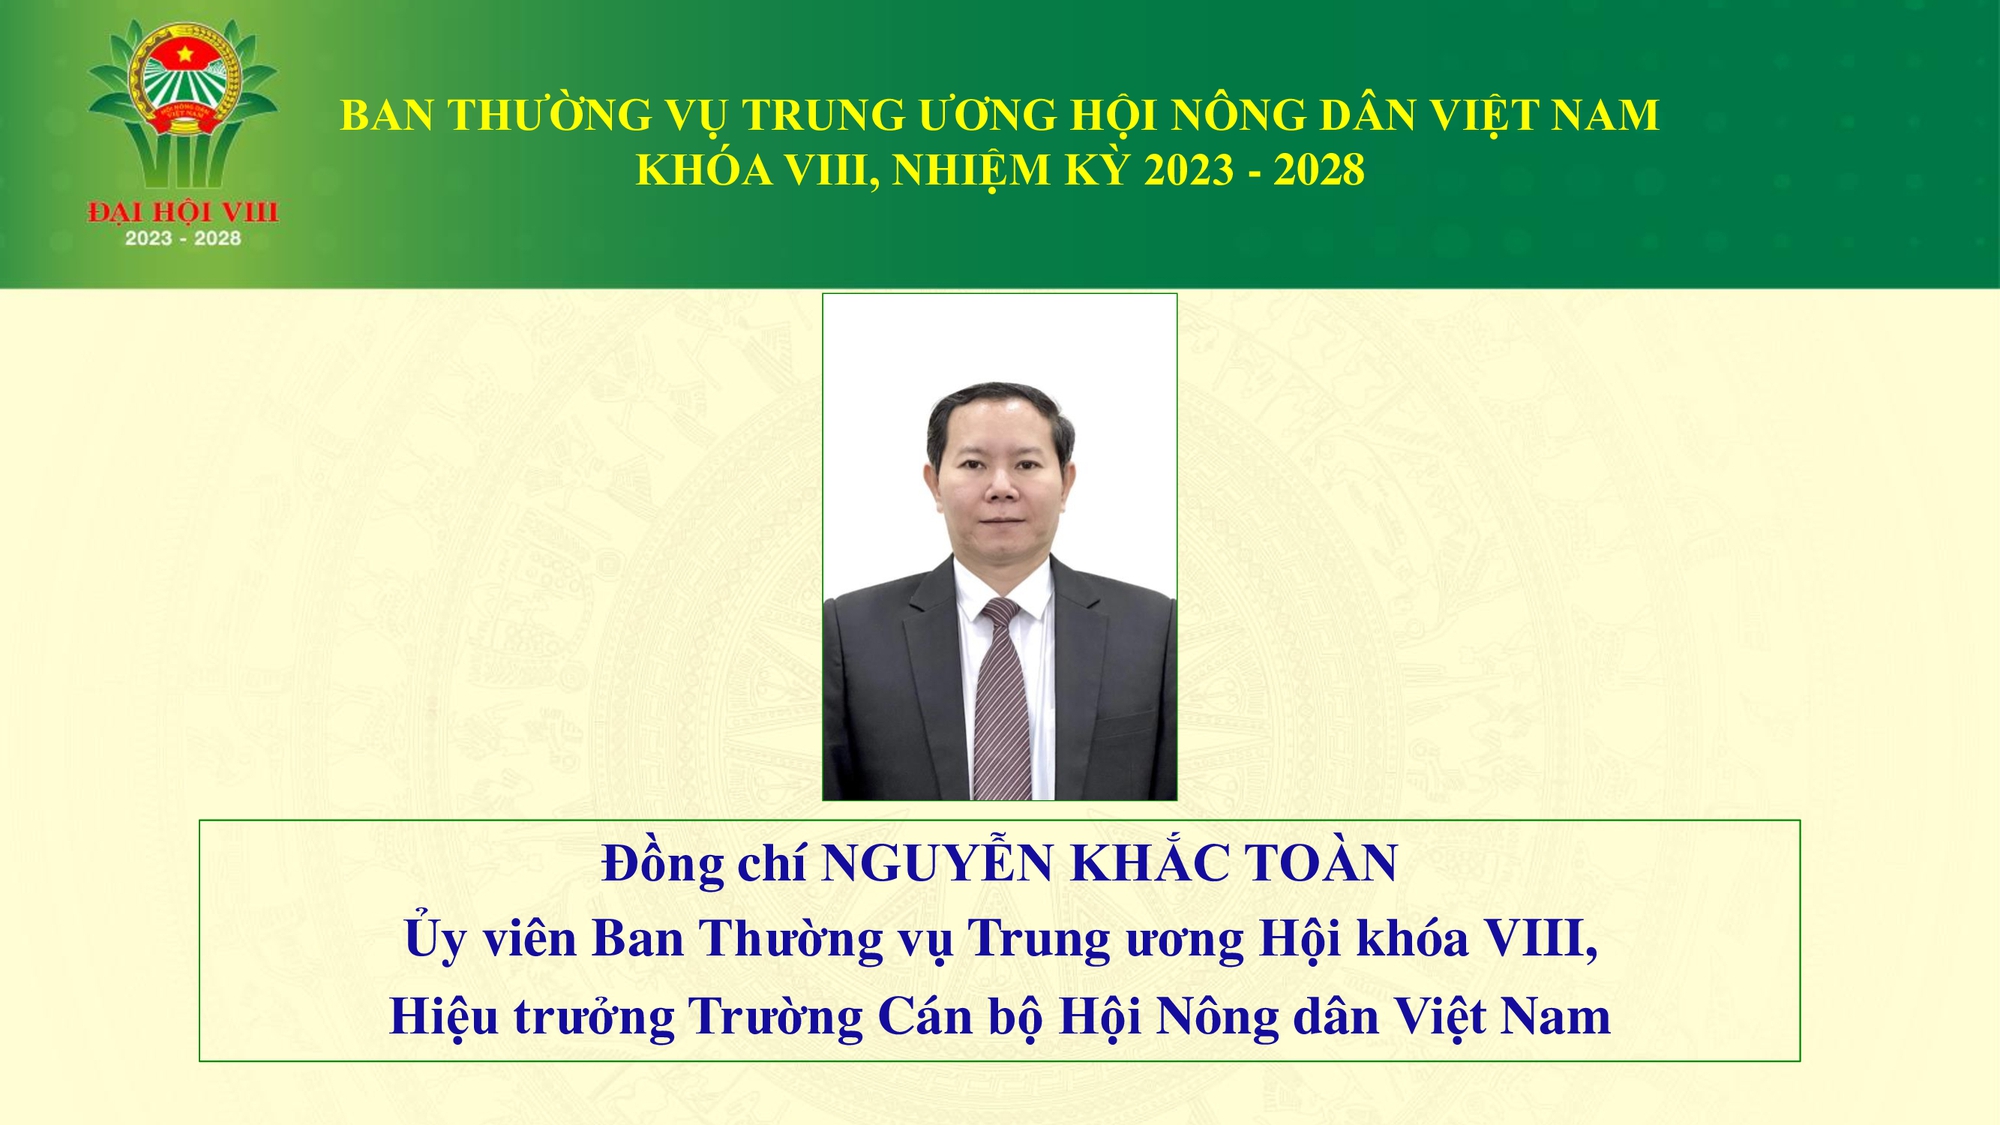 Danh sách 18 đồng chí tham gia Ban Thường vụ Trung ương Hội Nông dân Việt Nam - Ảnh 10.